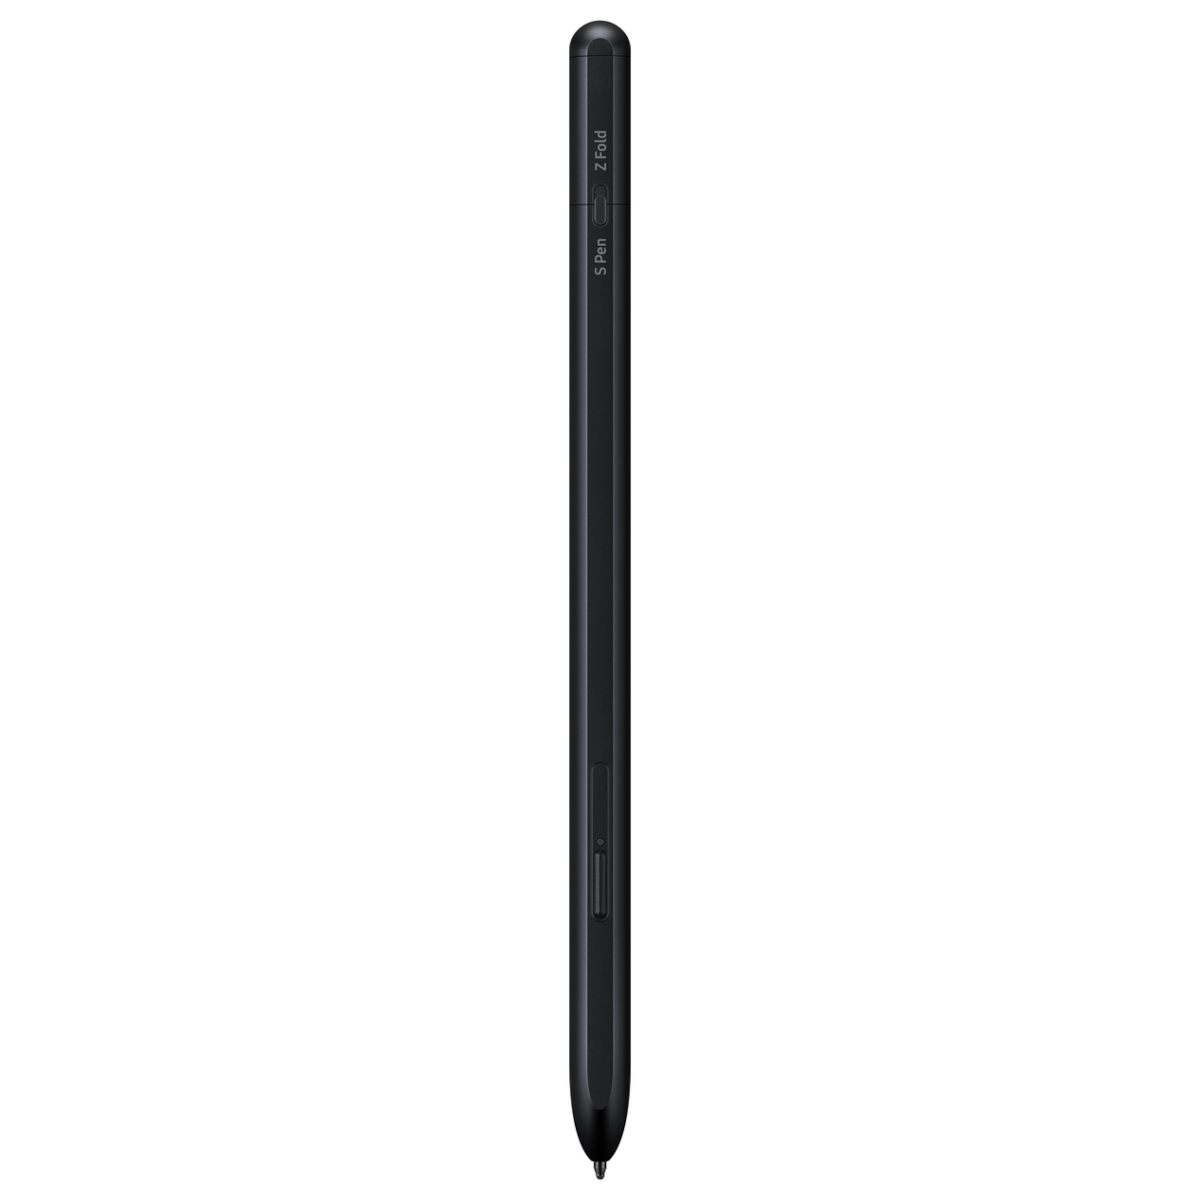 SAMSUNG S Pen Pro - Stift - kabellos - Bluetooth - Schwarz - für Galaxy Note10, Note20, Note20 5G, S